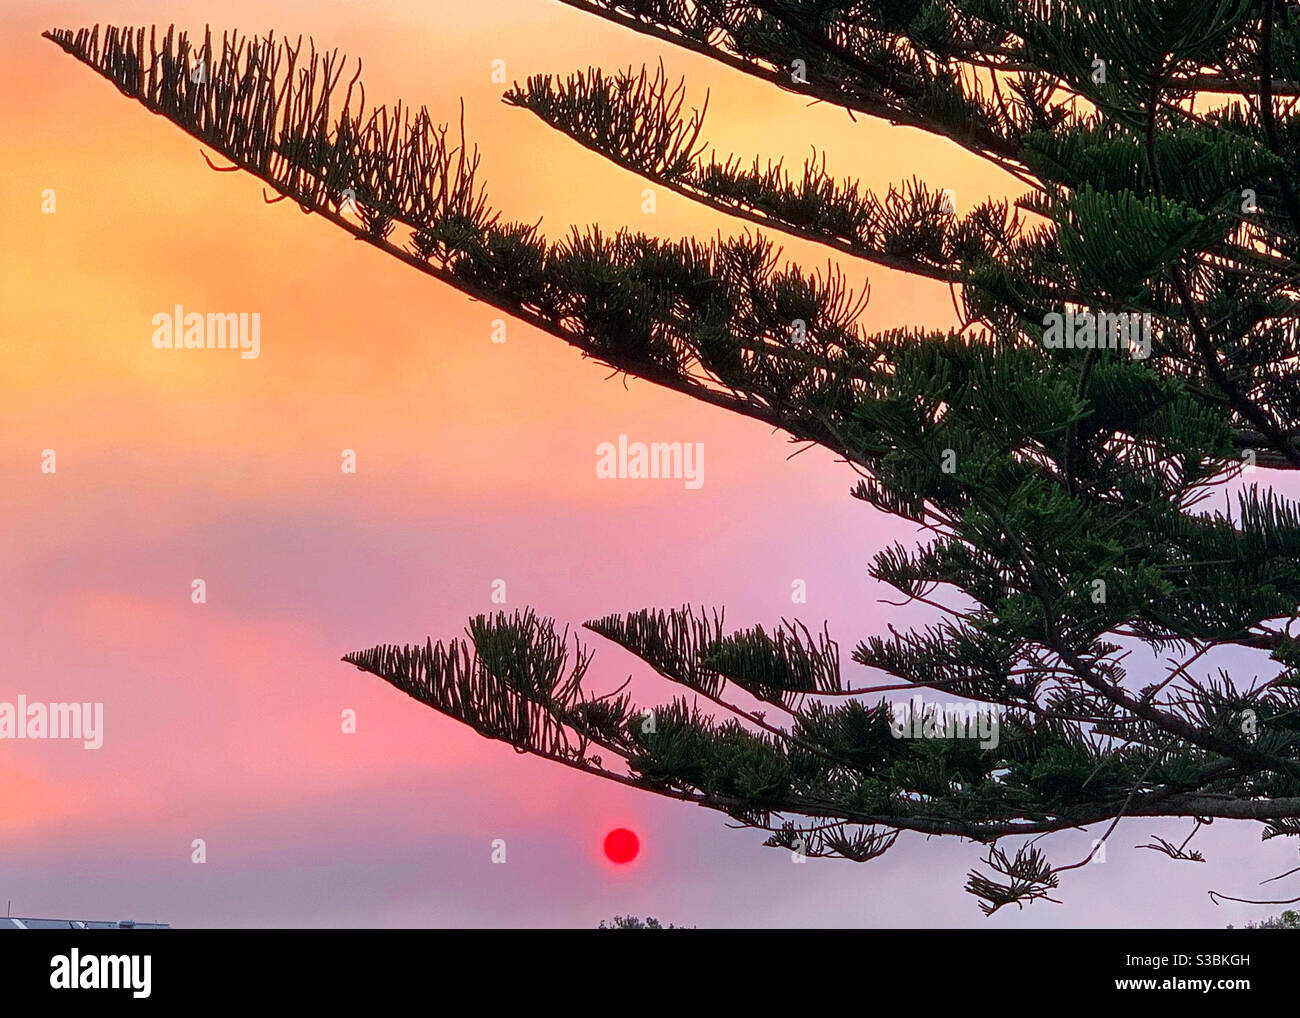 Die Sonne erscheint als ein purpurroter Kreis in einem Rauchig rosa Sonnenuntergang mit einem Norfolk Pine Baum im Vordergrund Stockfoto